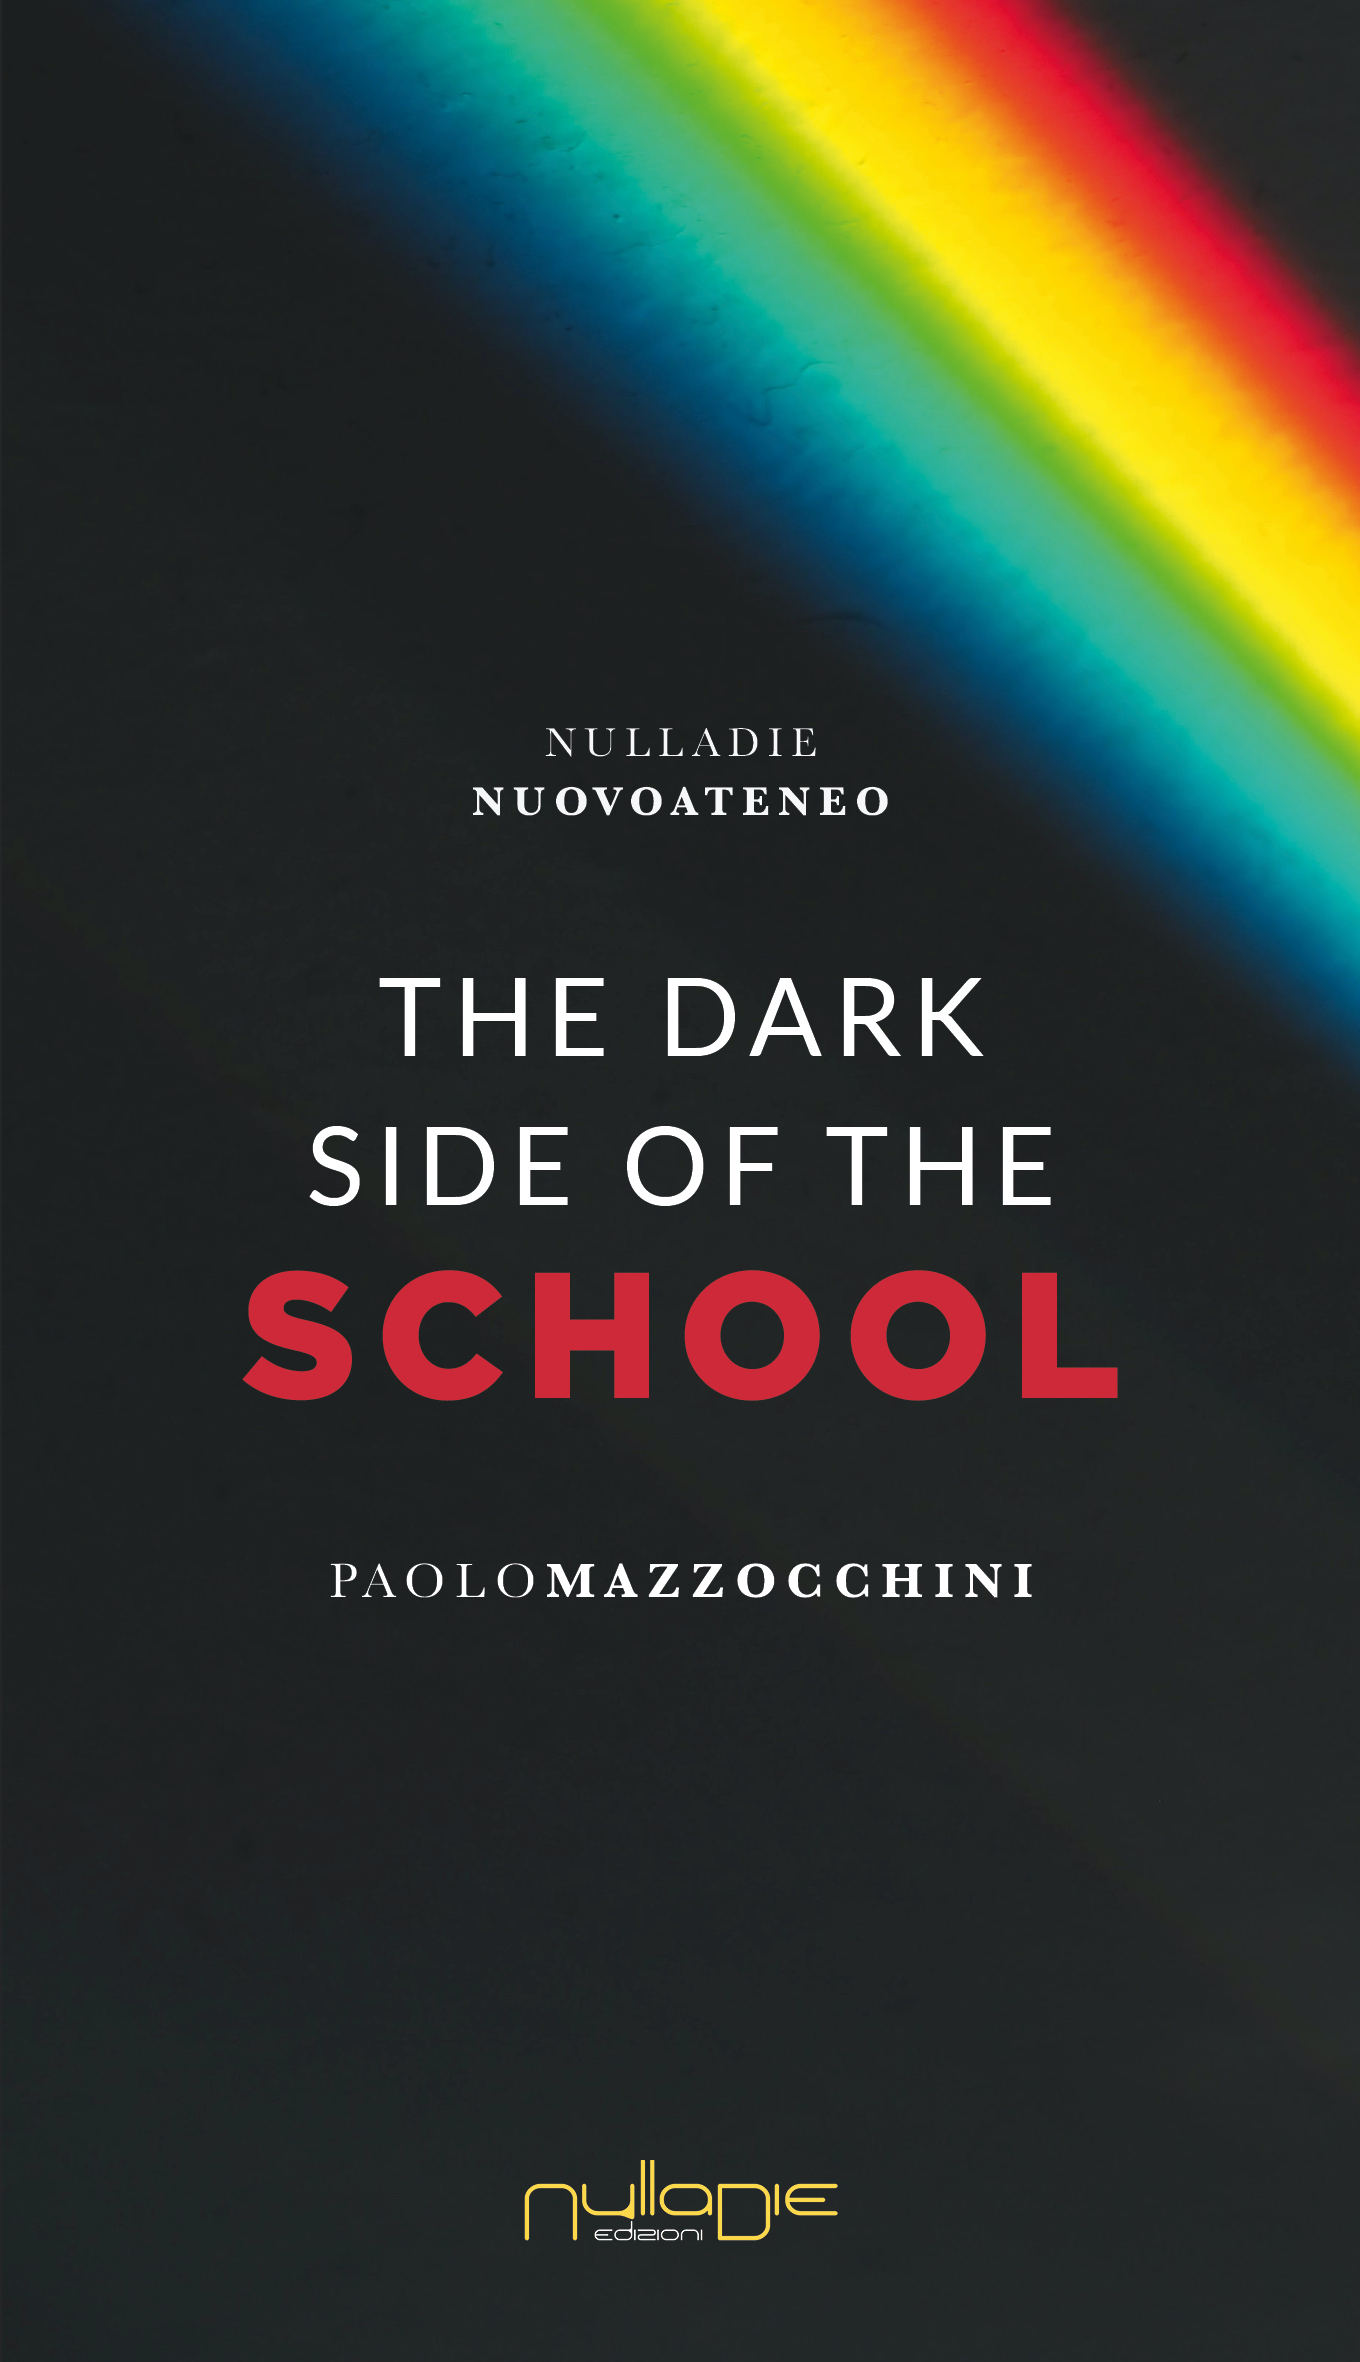 The Dark Side of the School, di Paolo Mazzocchini